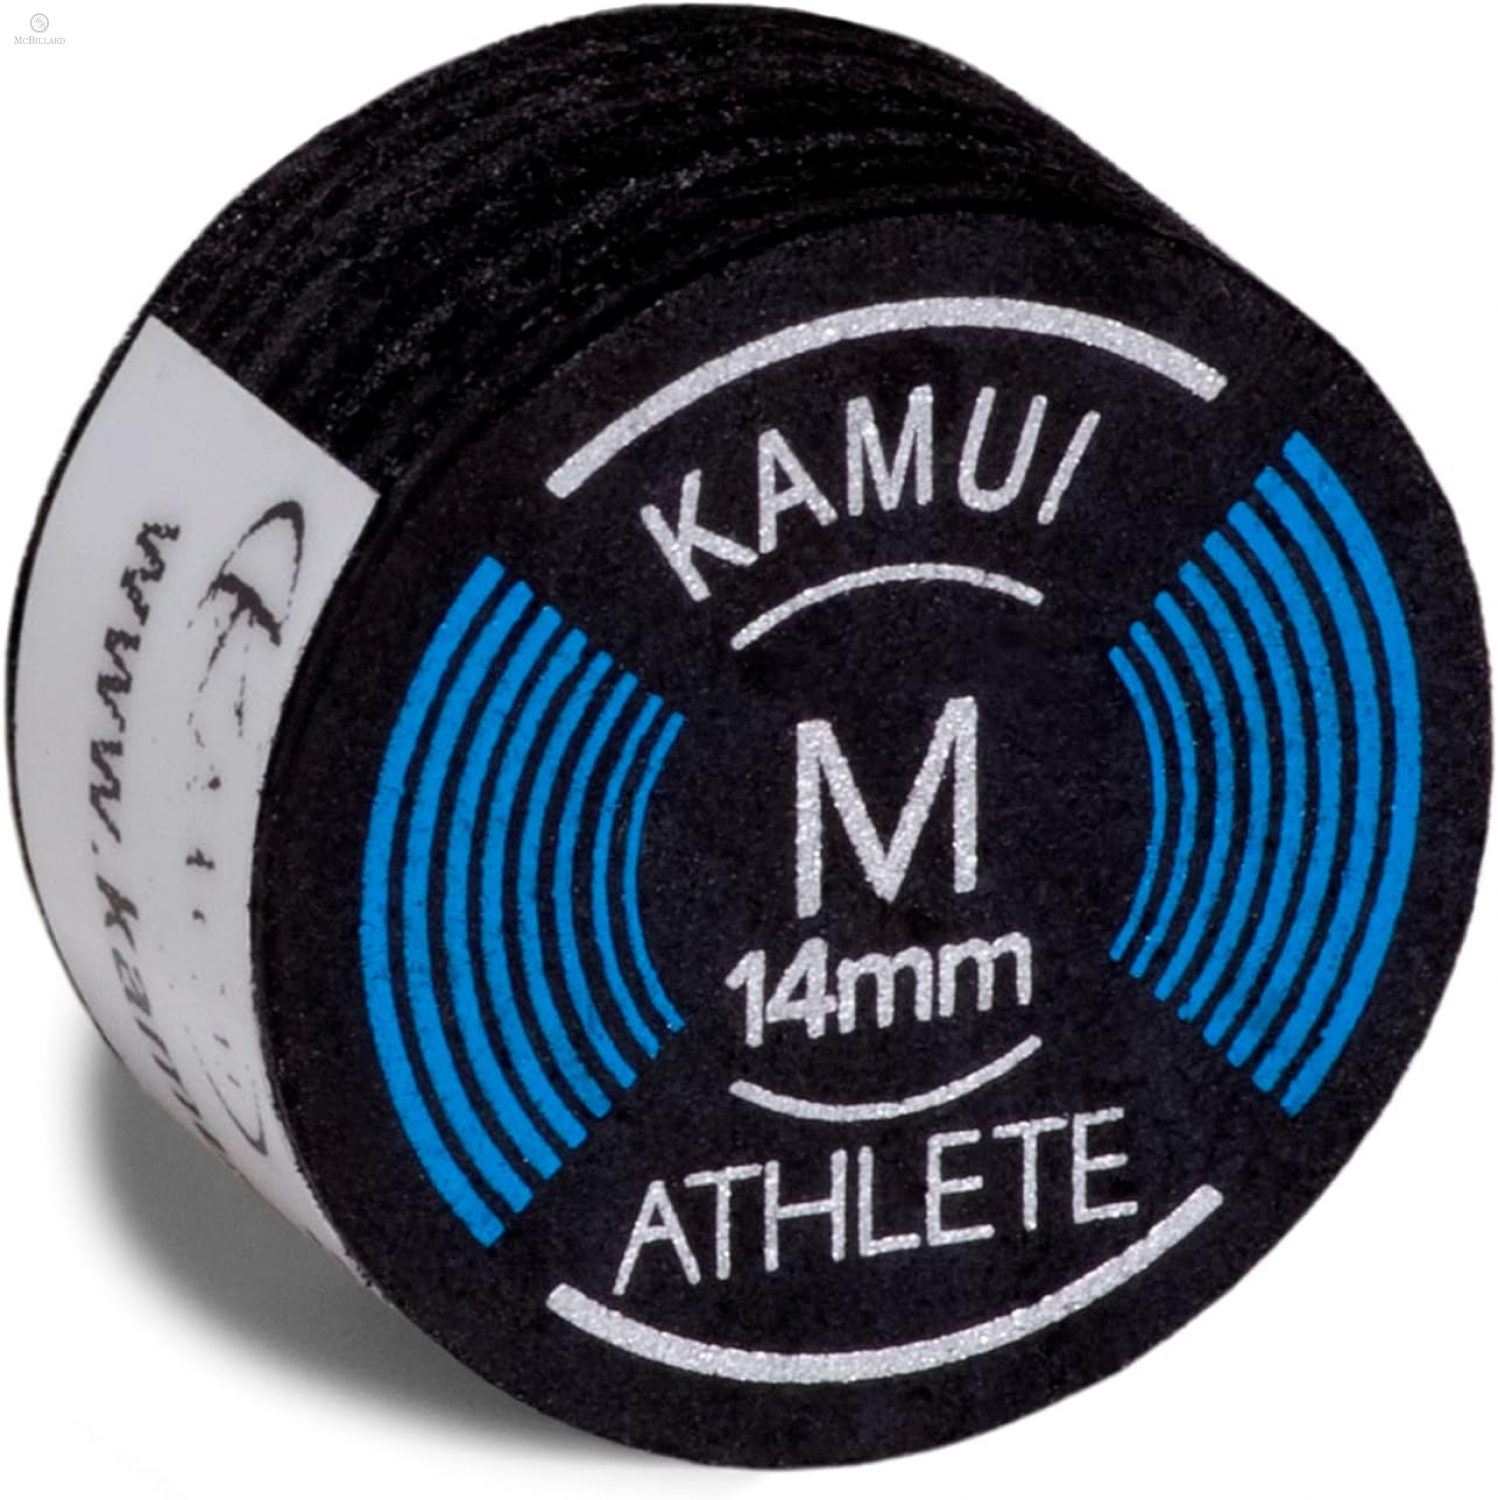 Klebeleder Kamui Mehrschicht - Athlete M - 14 mm, 1 Stück